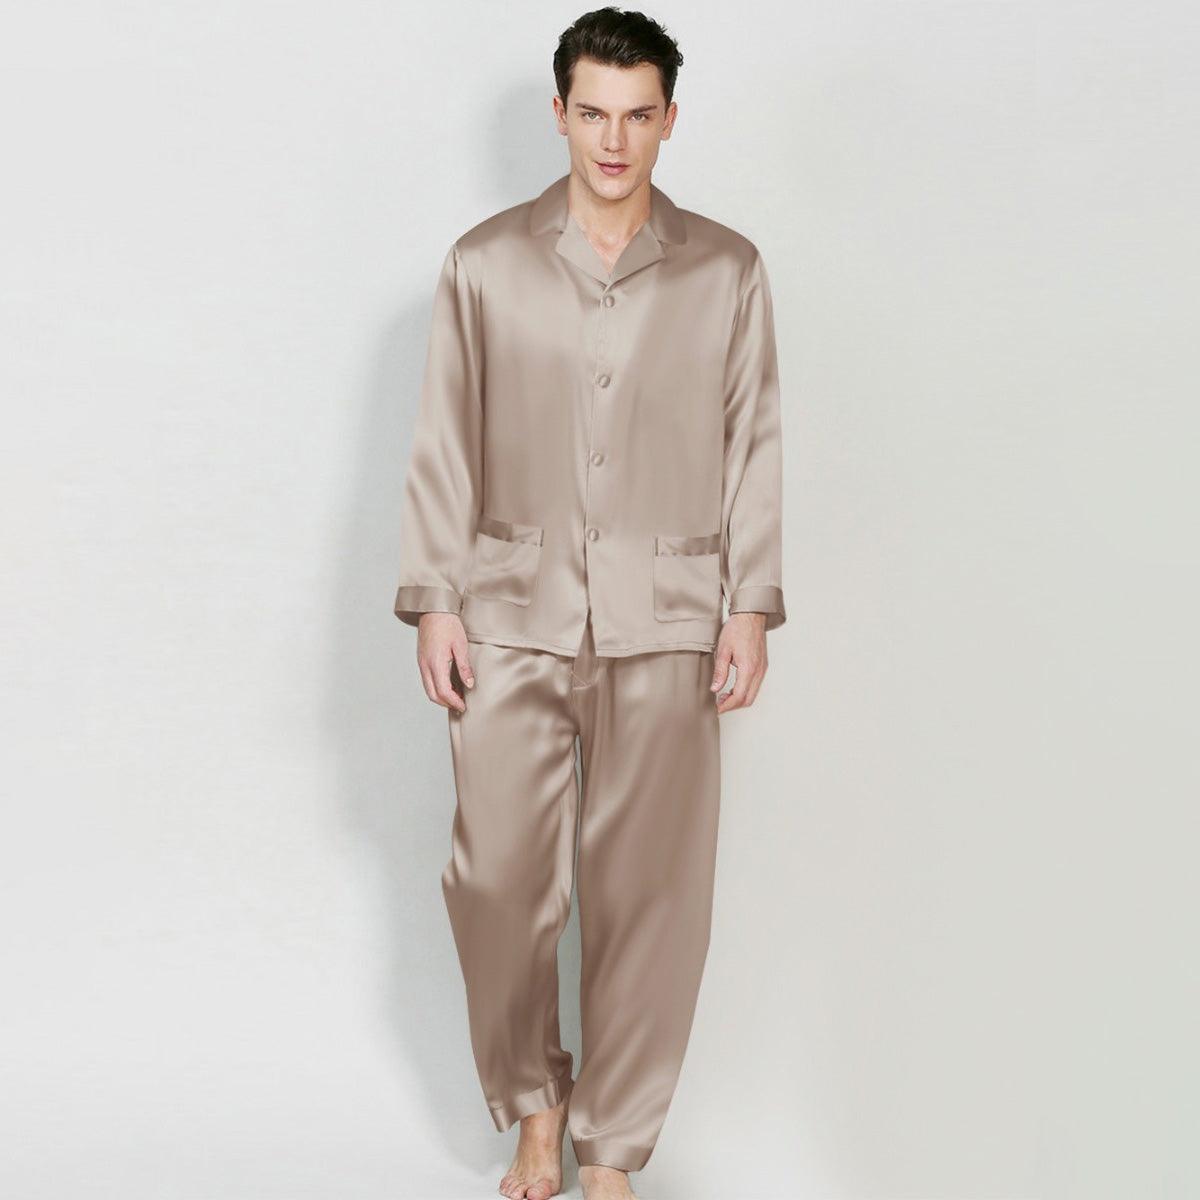 Silk Pajama Set for Men Classic 100% Mulberry Luxury Men Silk